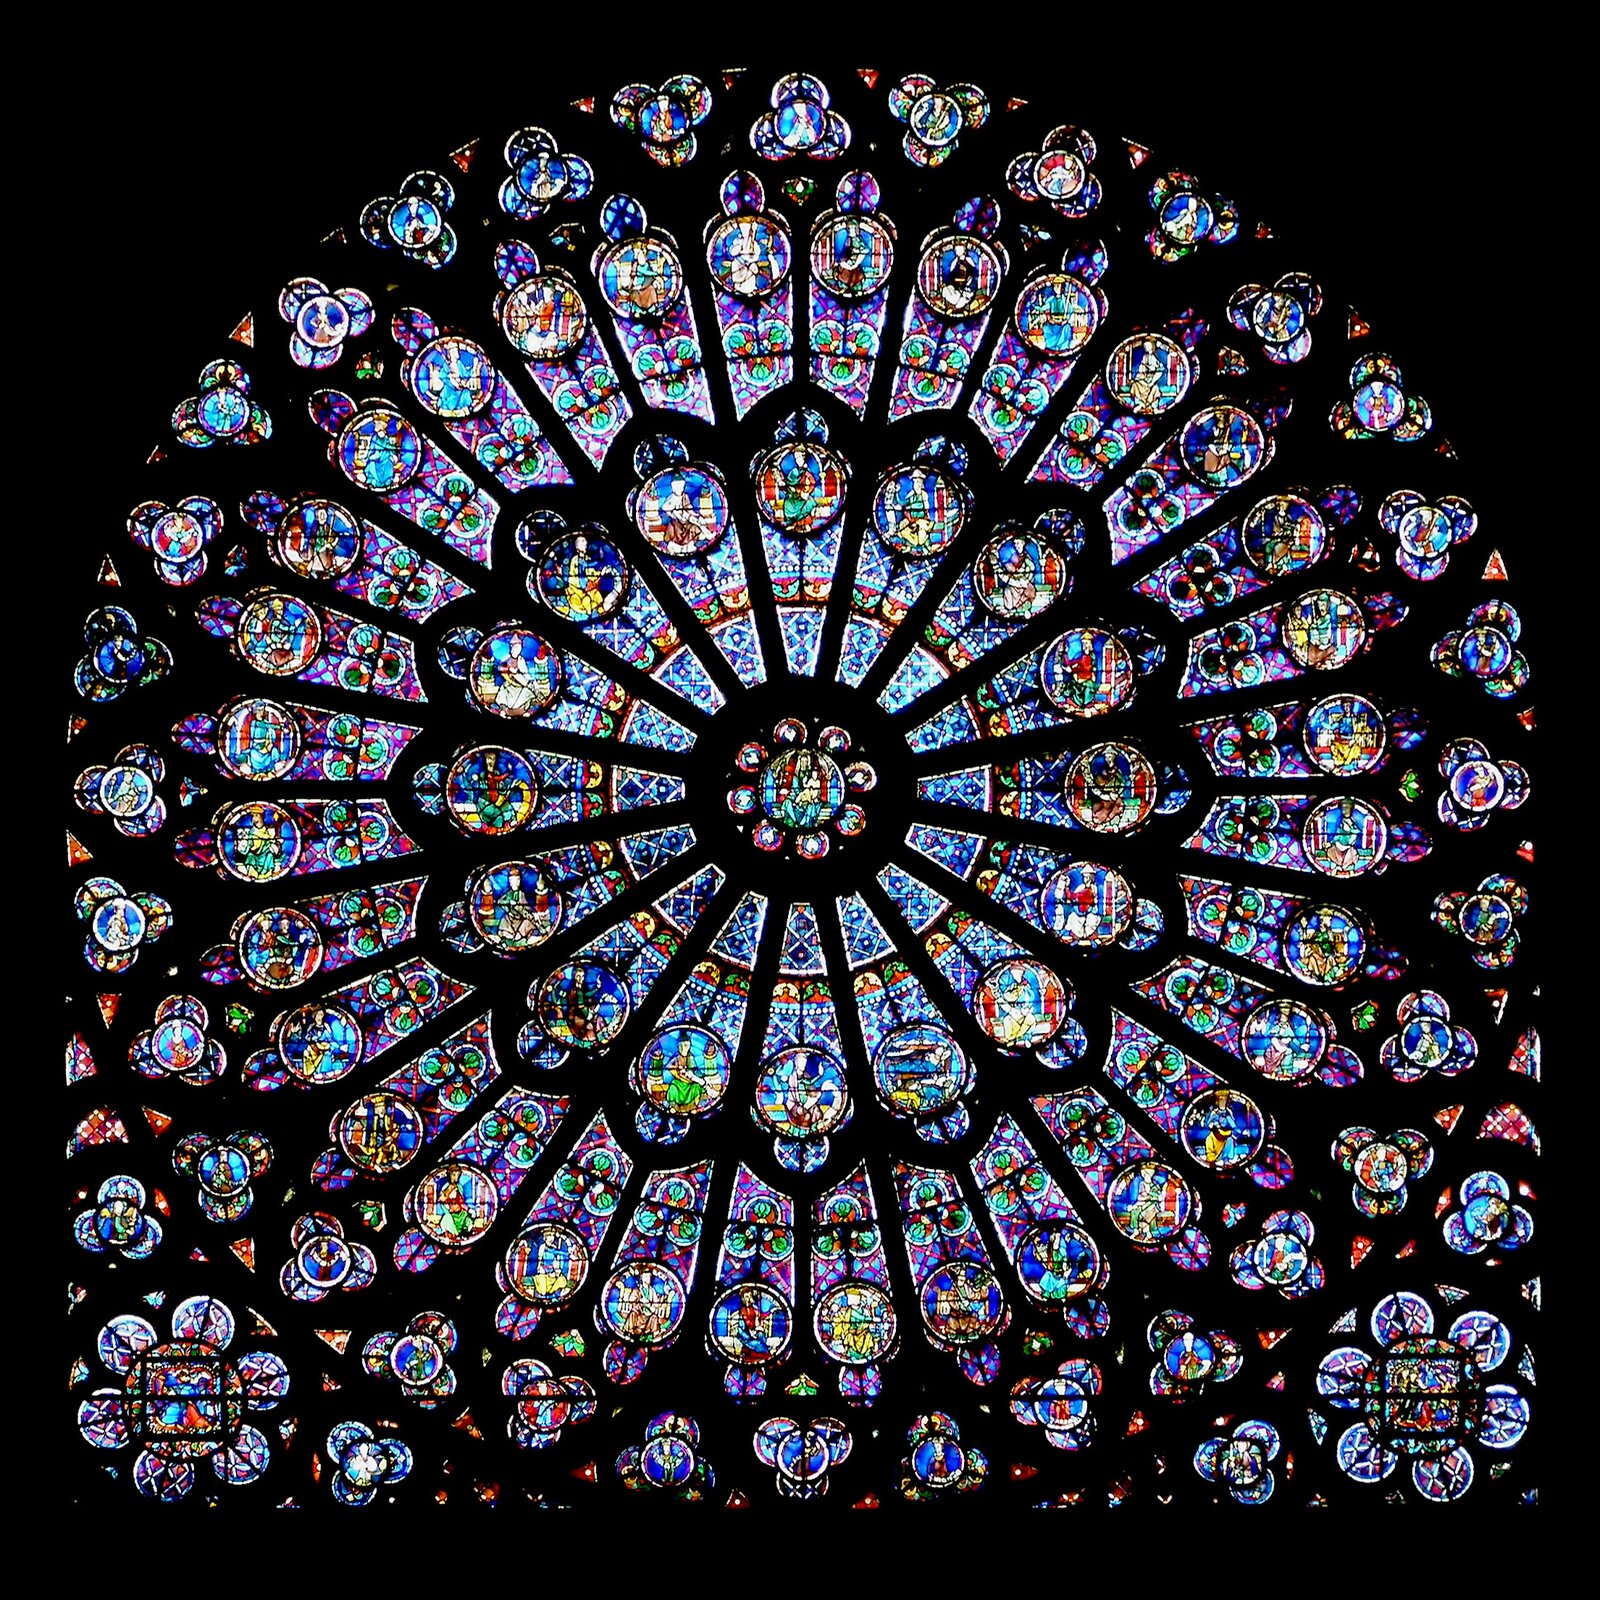 Ilustracja przedstawia zdjęcie rozety z katedry Notre Dame w Paryżu. Na zdjęciu widzimy rozbudowany witraż, Każda z części przedstawia inny motyw. Po najechaniu kursorem na ilustrację pojawi się okrąg, który przybliża fragment zdjęcia na zasadzie lupki.